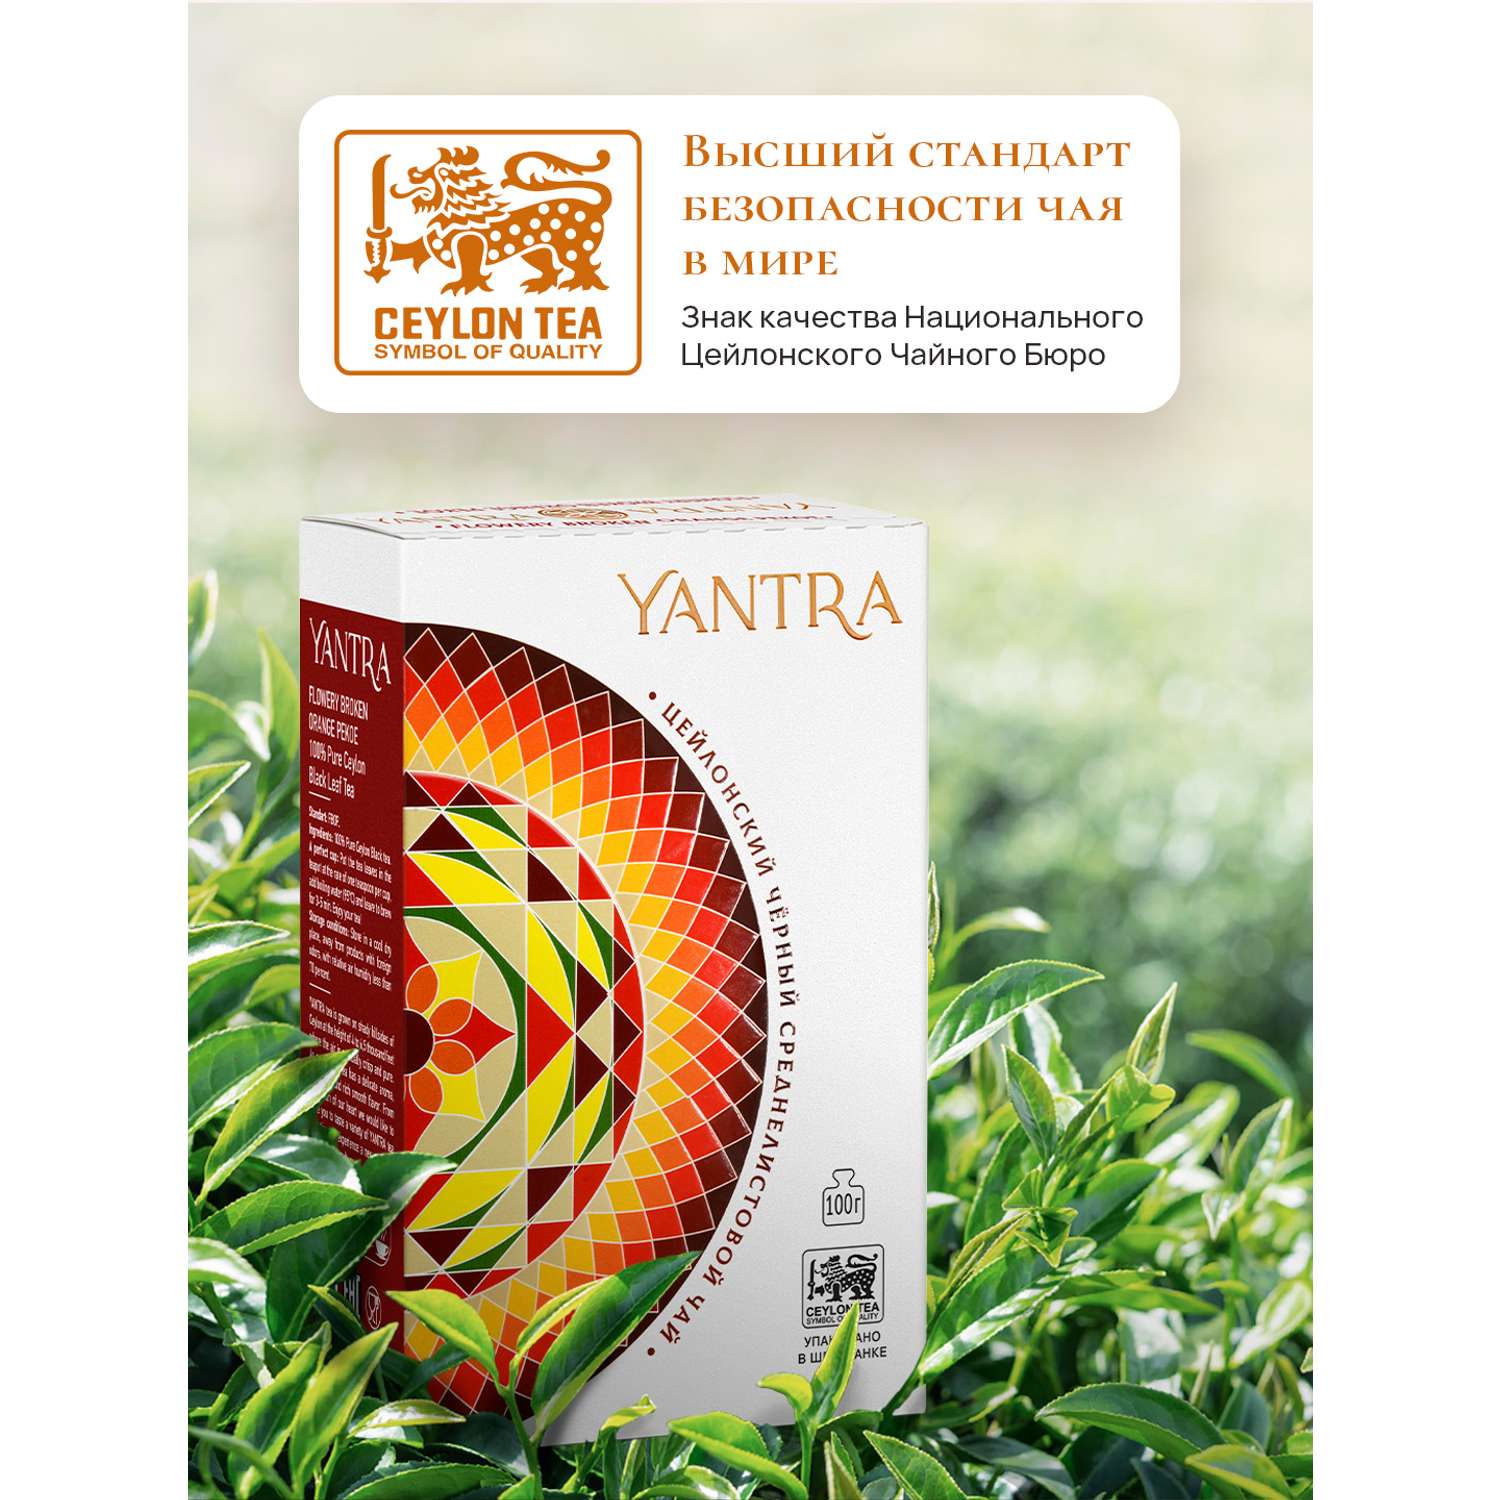 Чай Классик Yantra черный среднелистовой стандарт FBOP 200 г - фото 3